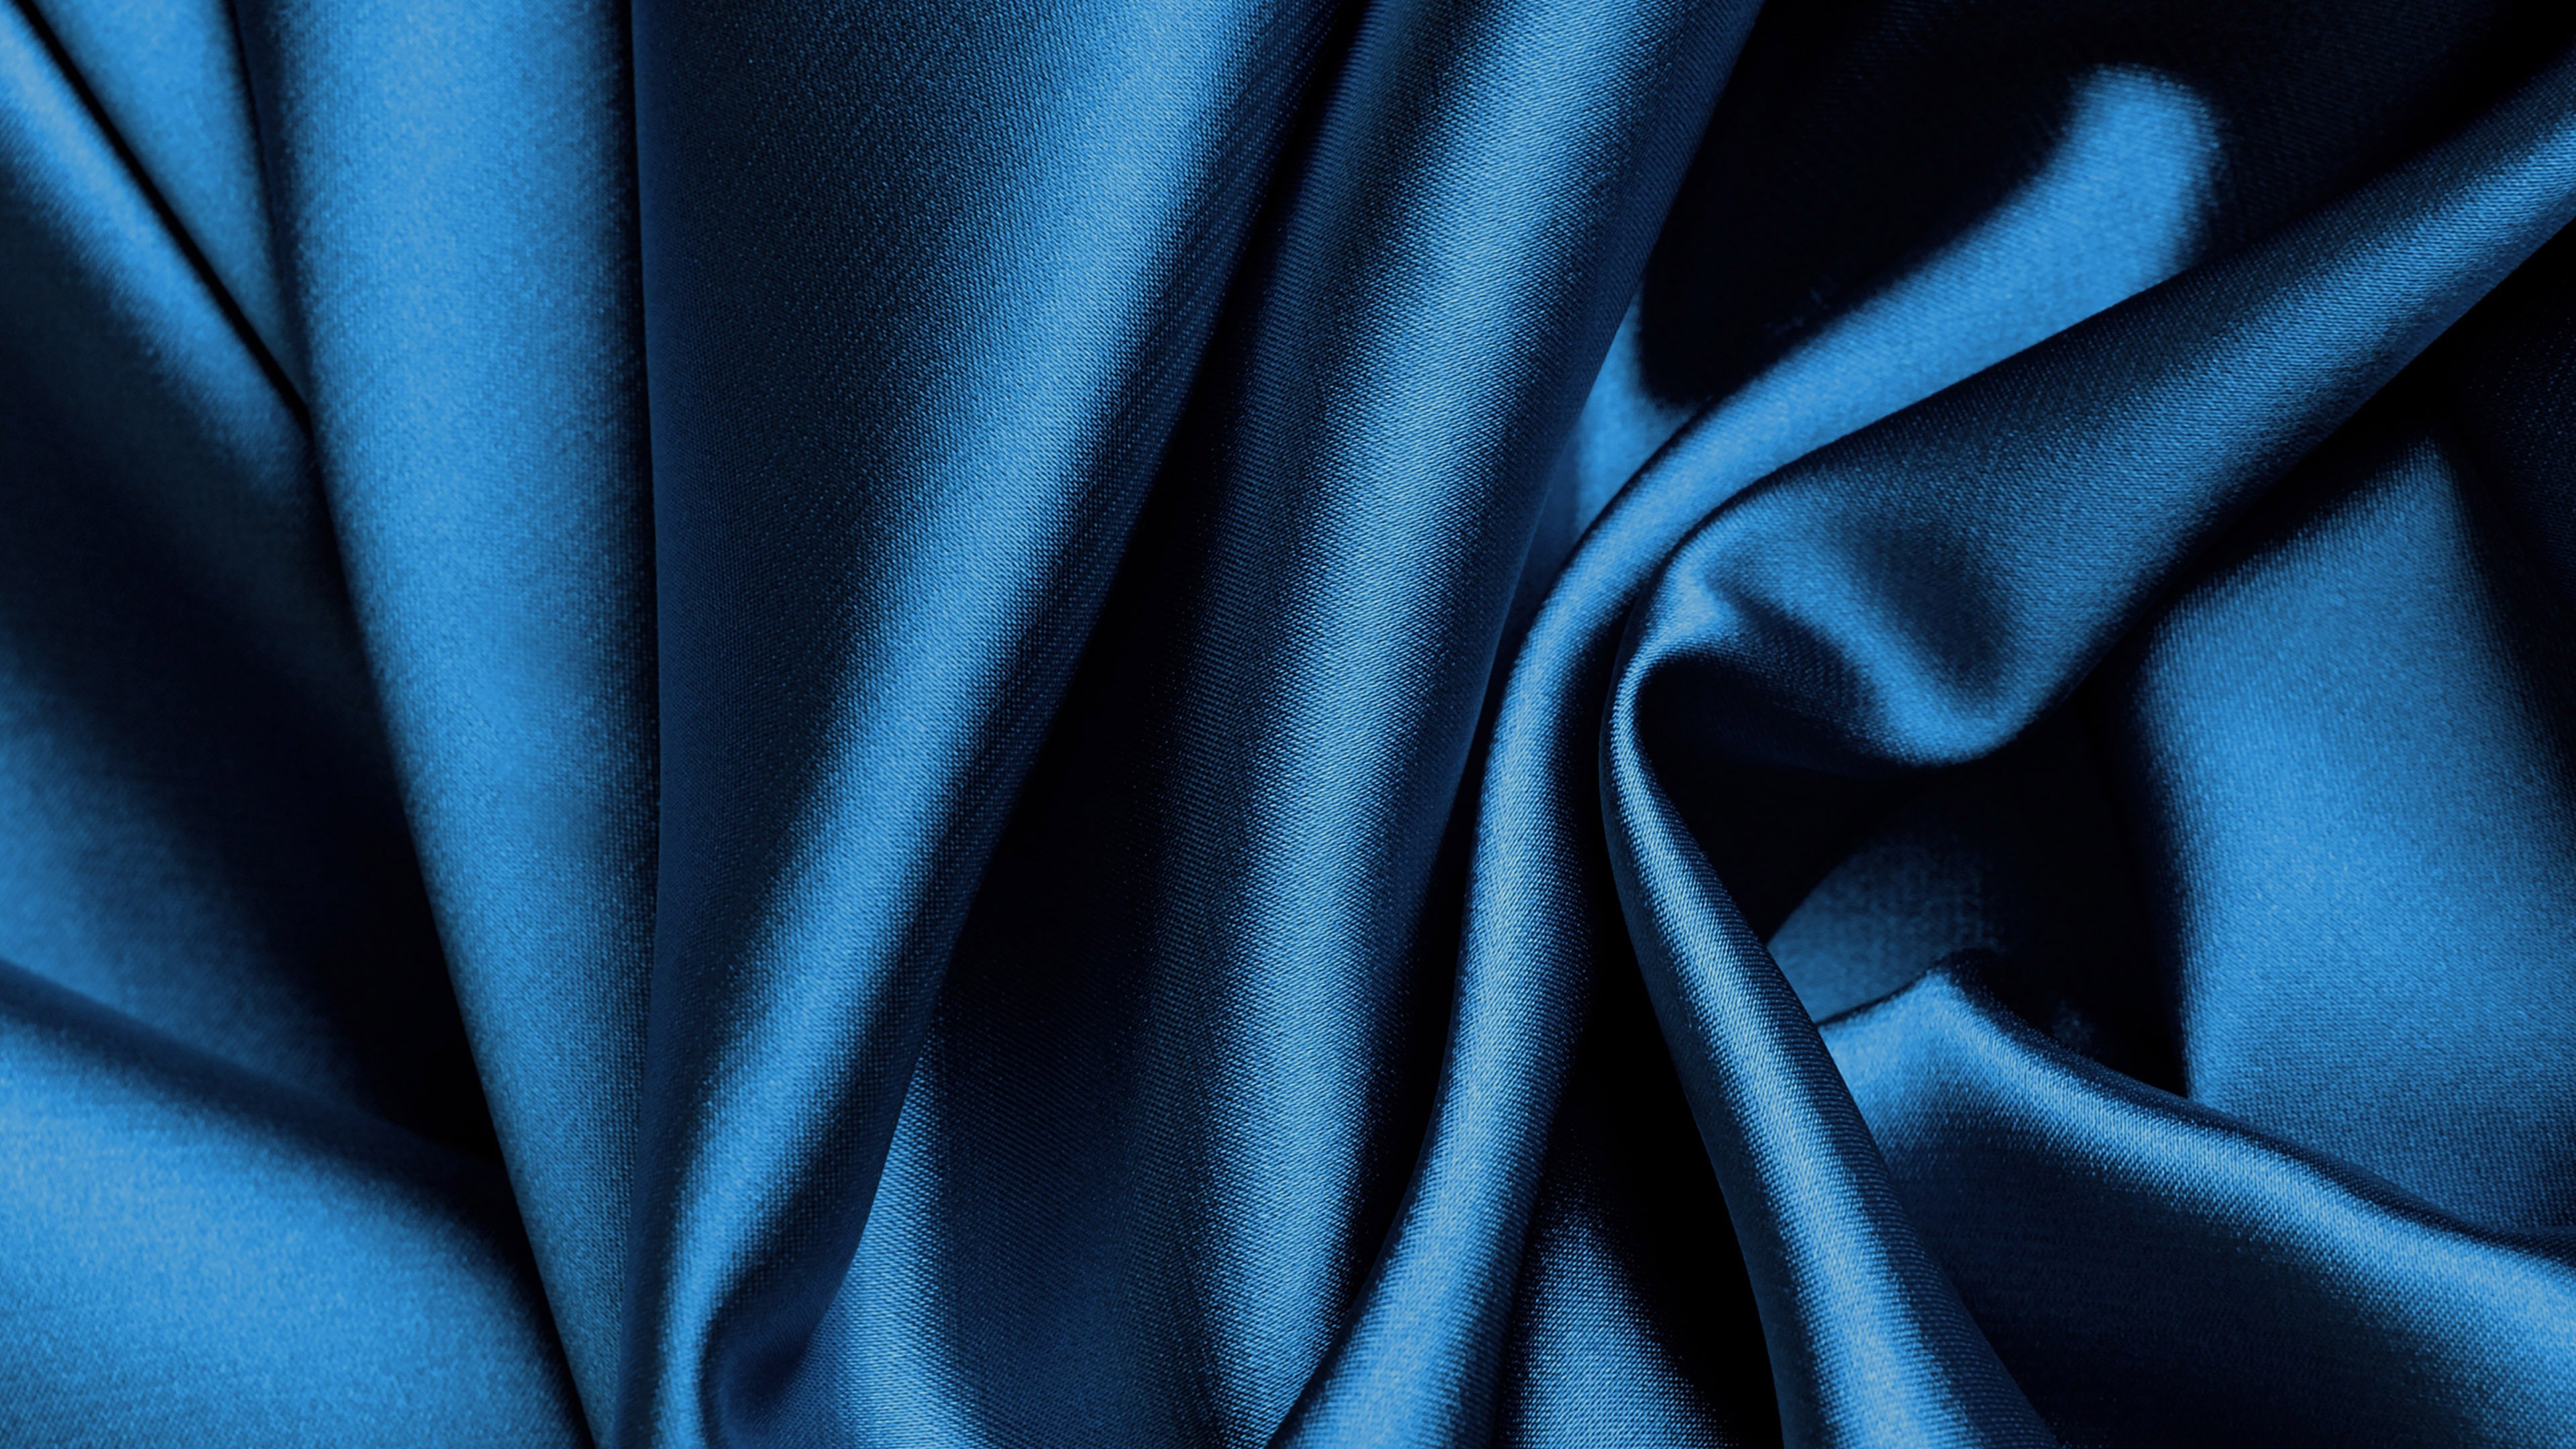 Blaues Textil in Nahaufnahmen. Wallpaper in 3840x2160 Resolution